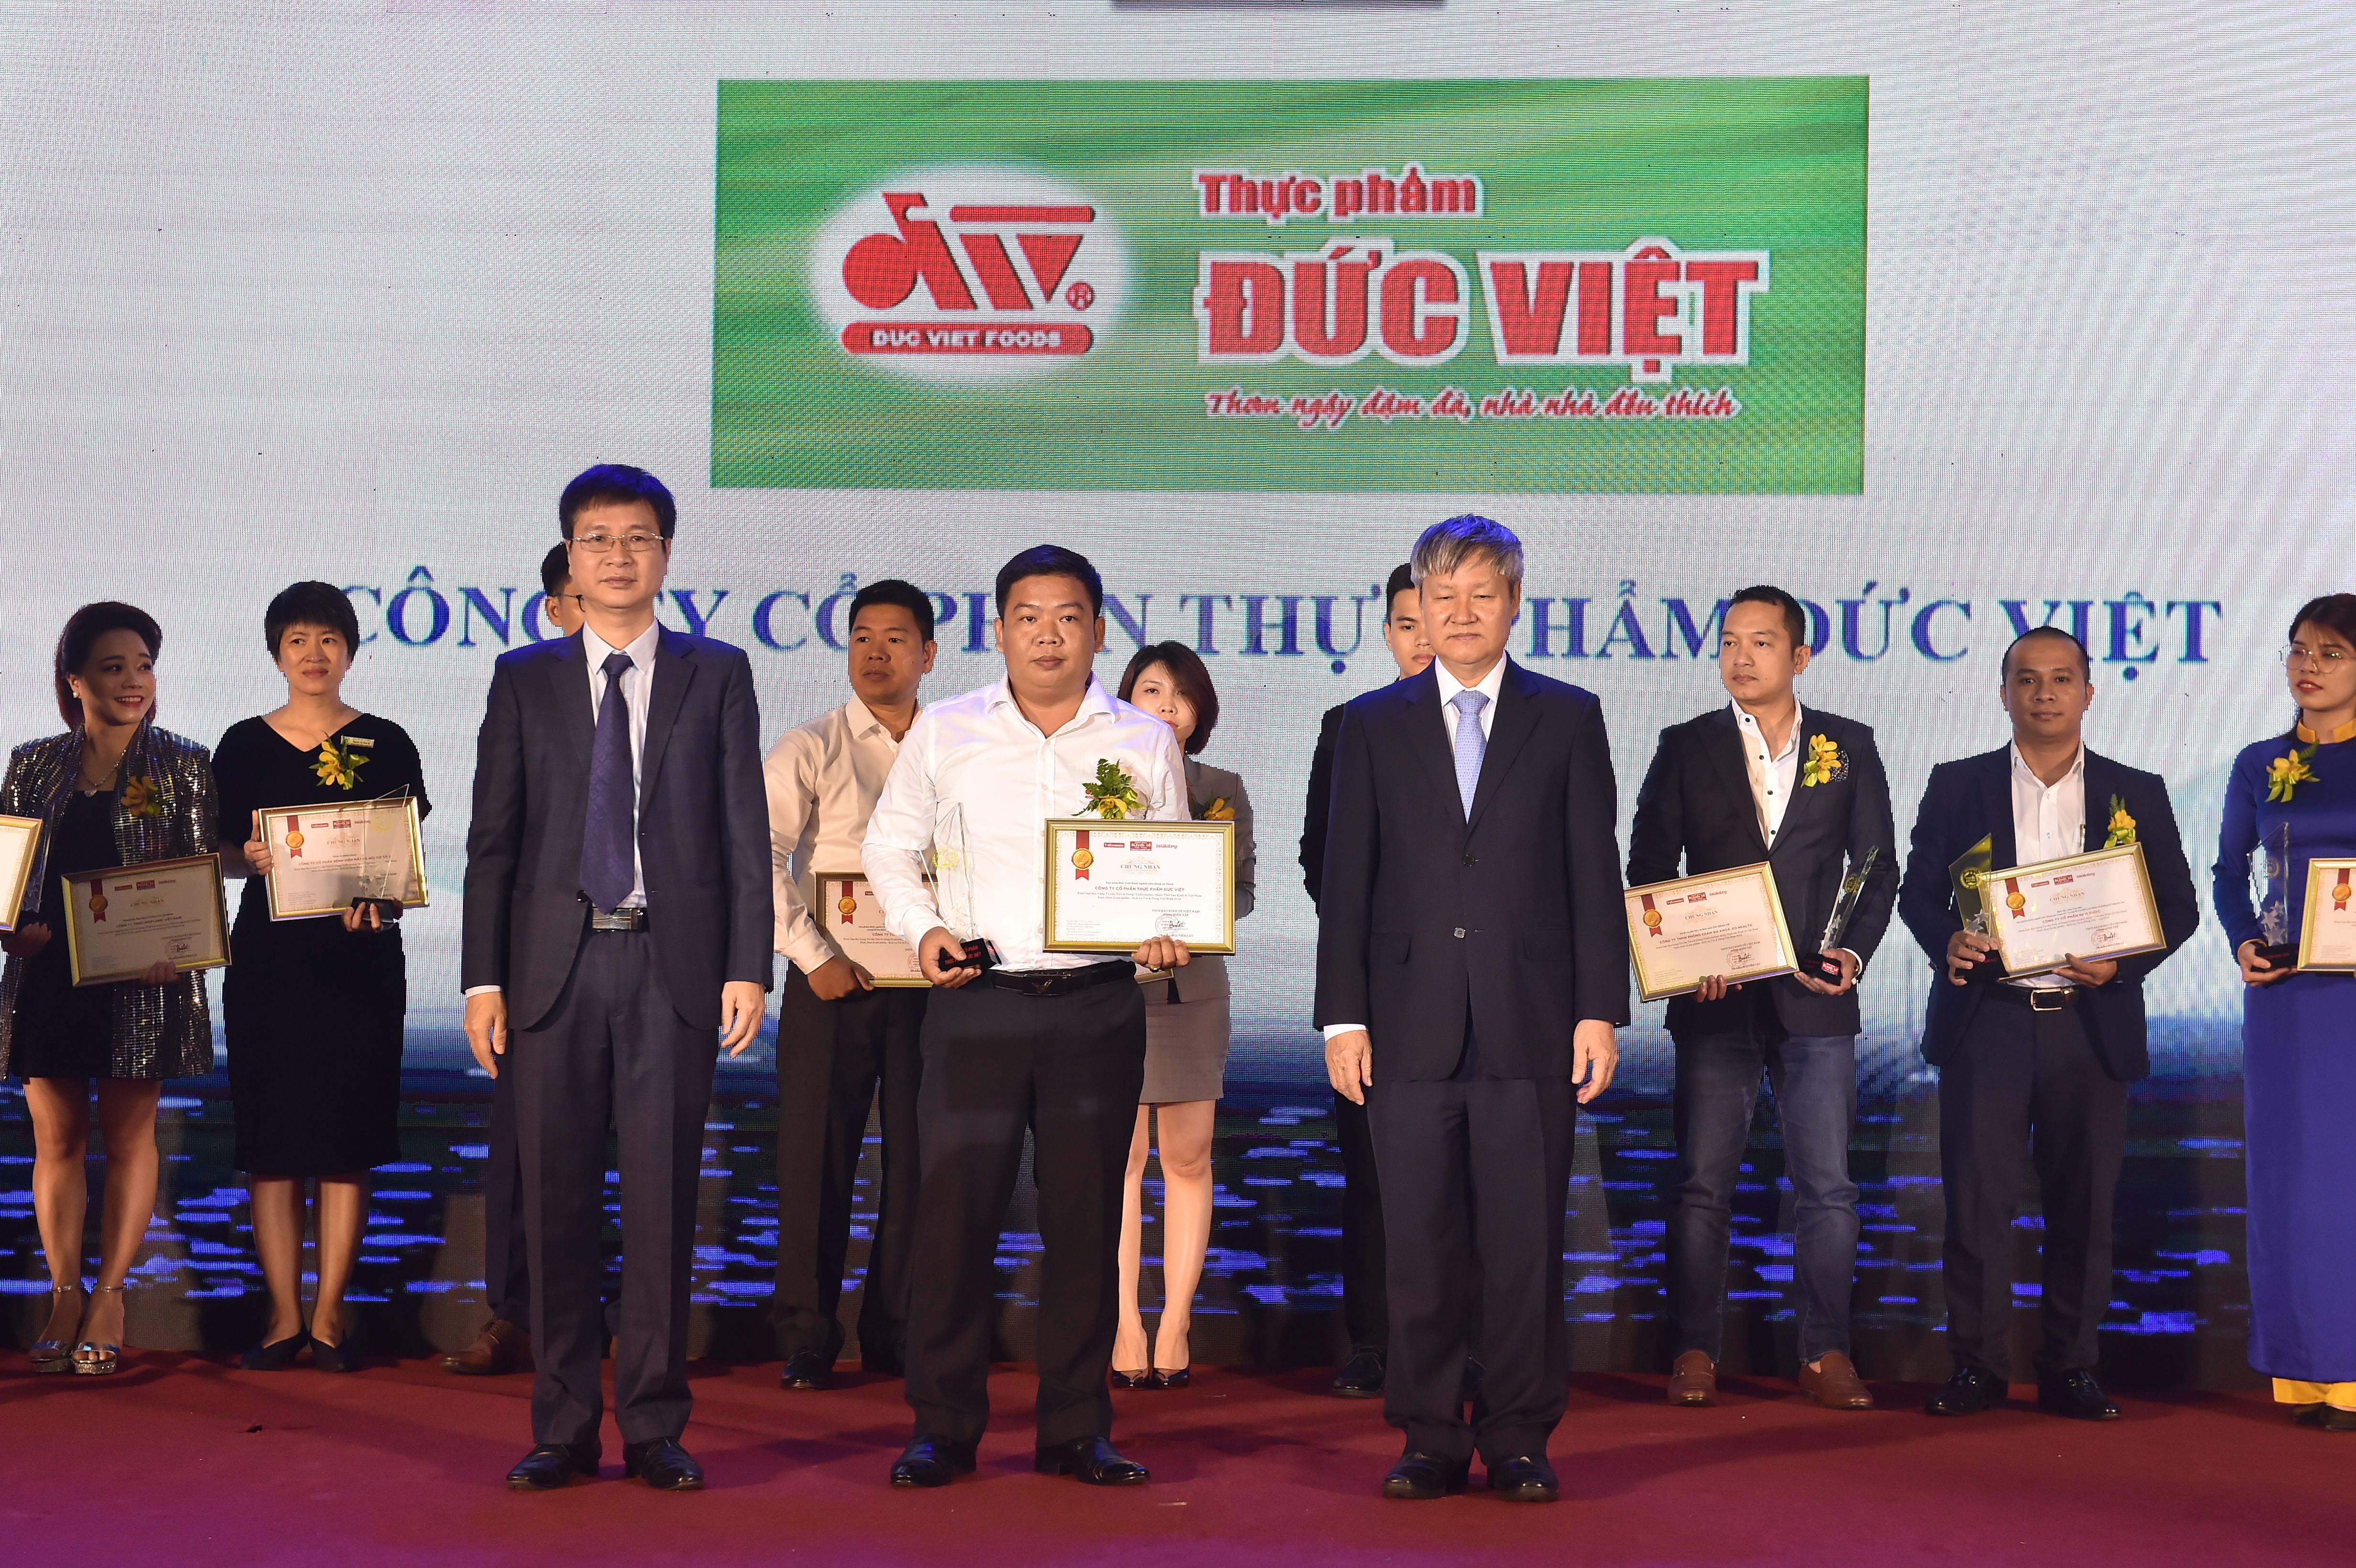 Thực phẩm Đức Việt vào Top 100 sản phẩm dịch vụ “Tin và Dùng” Việt Nam 2019